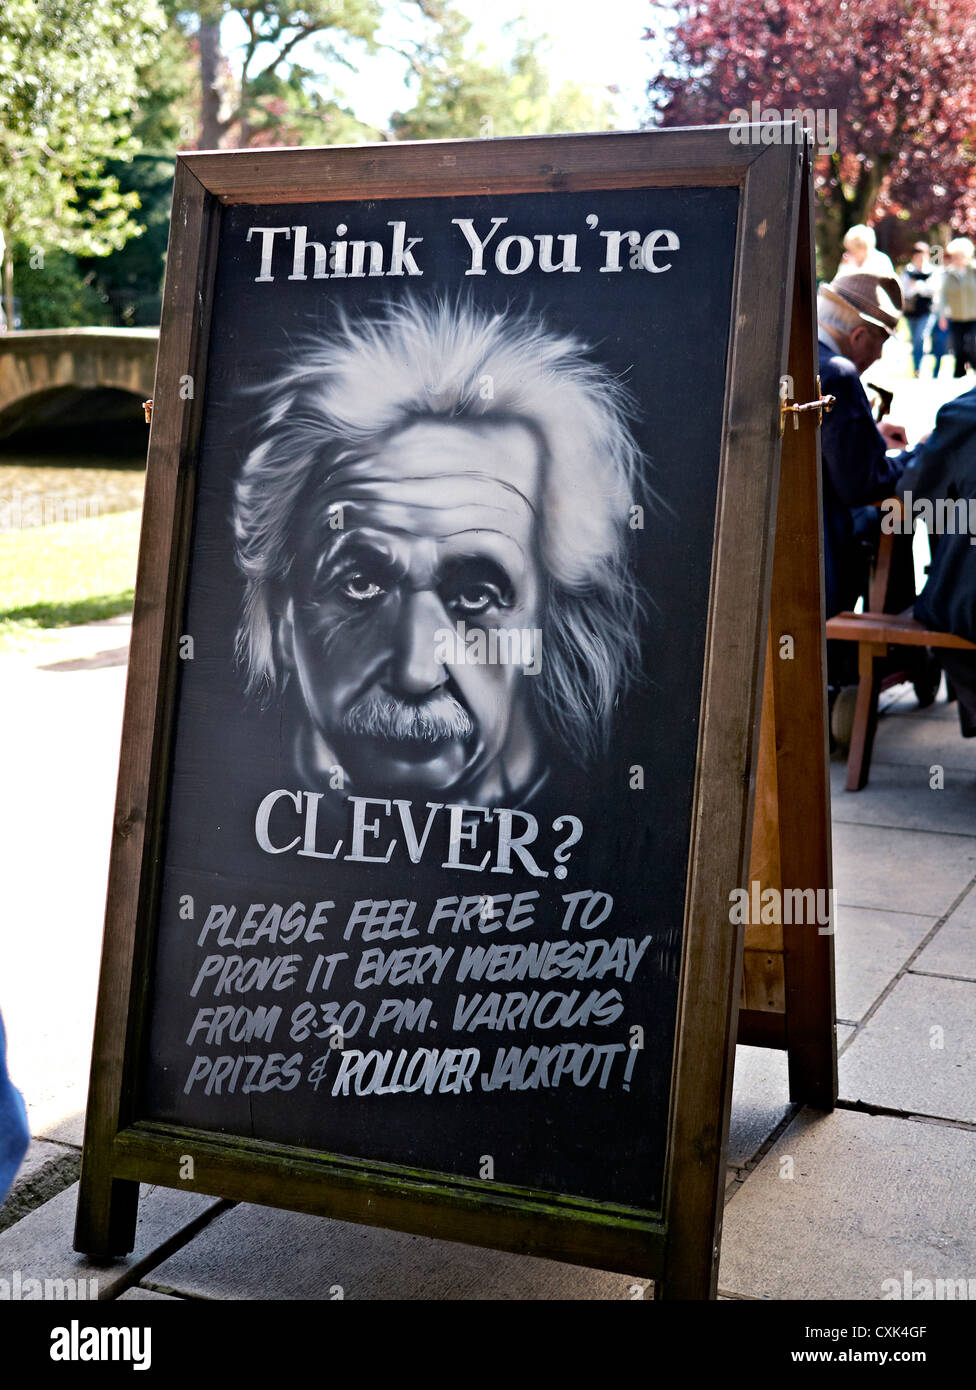 Public house anglais amusant quiz night publicité dispose d''une image d'Albert Einstein. Kingham Cotswolds UK Banque D'Images